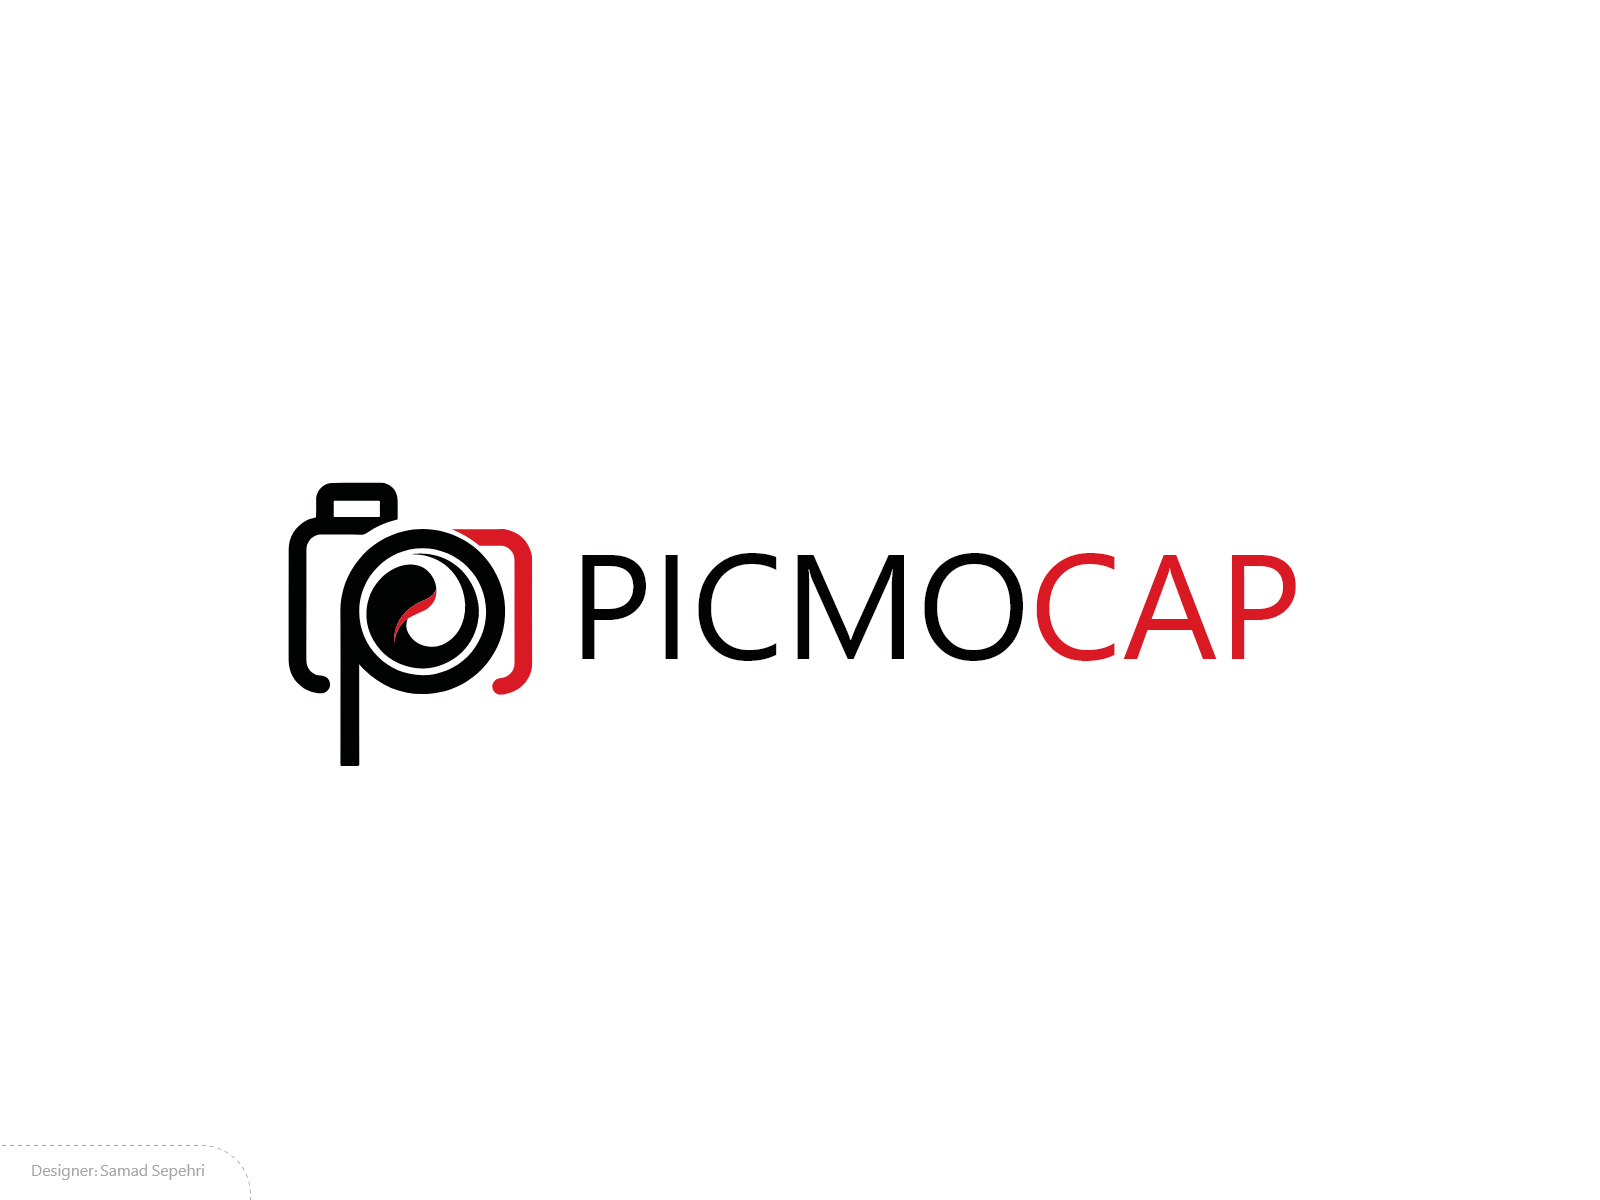 لوگو عکس و فیلم picmocap